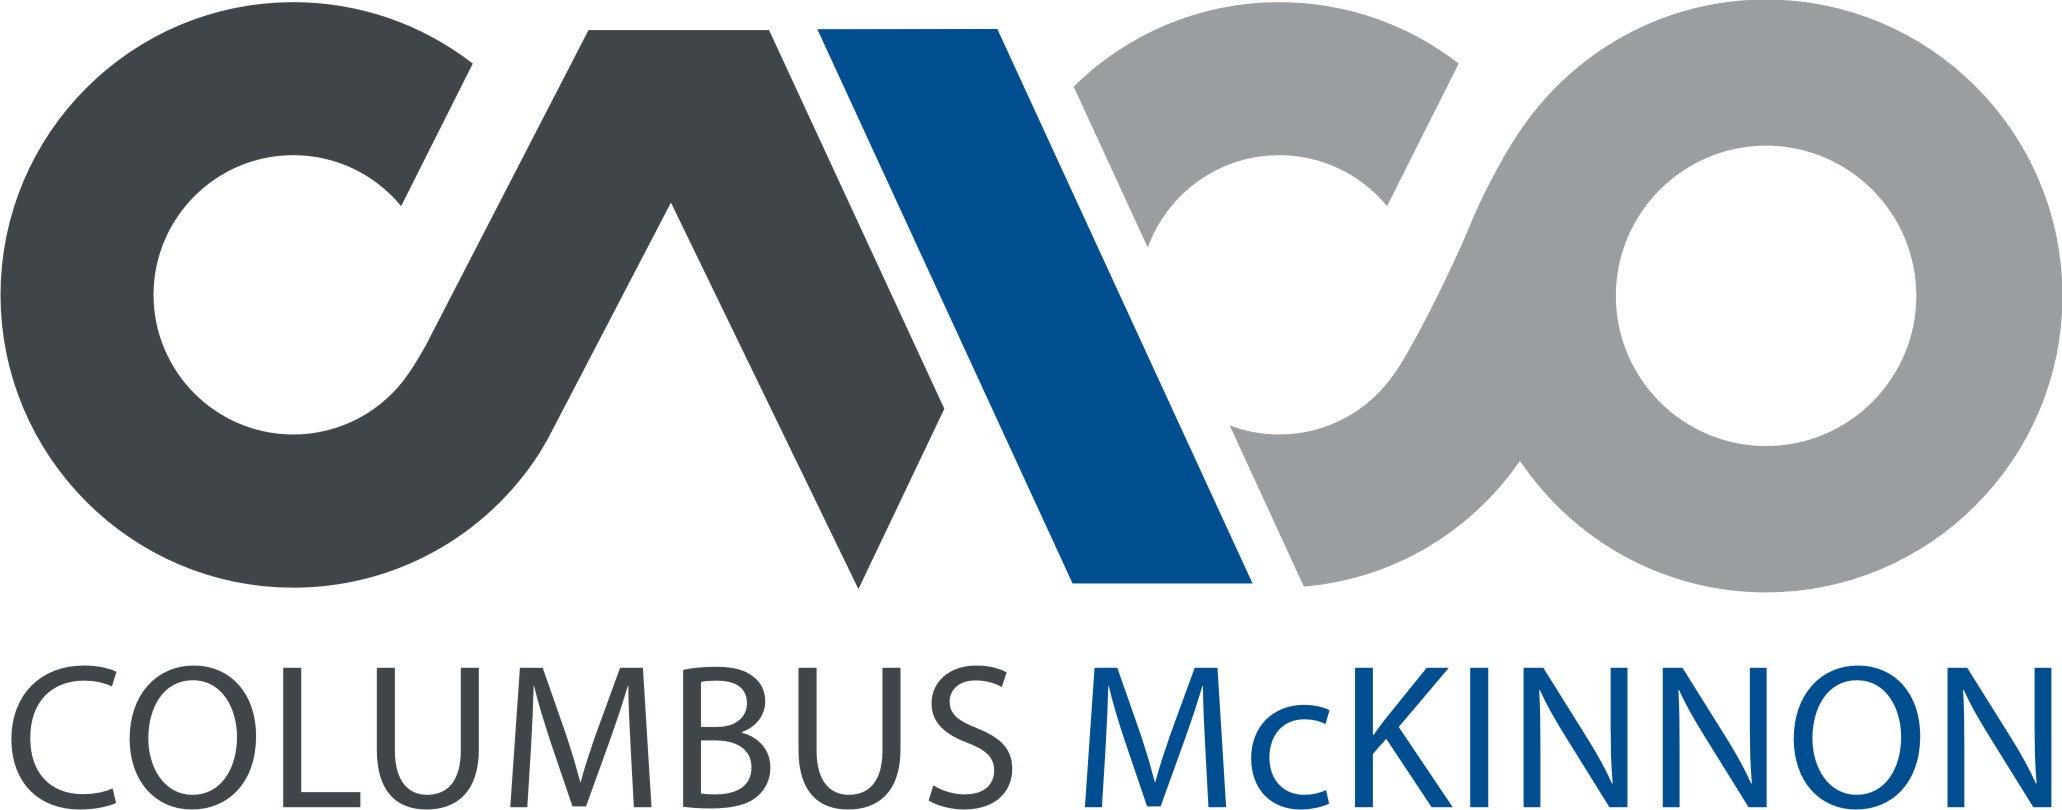 columbus-mckinnon-logo